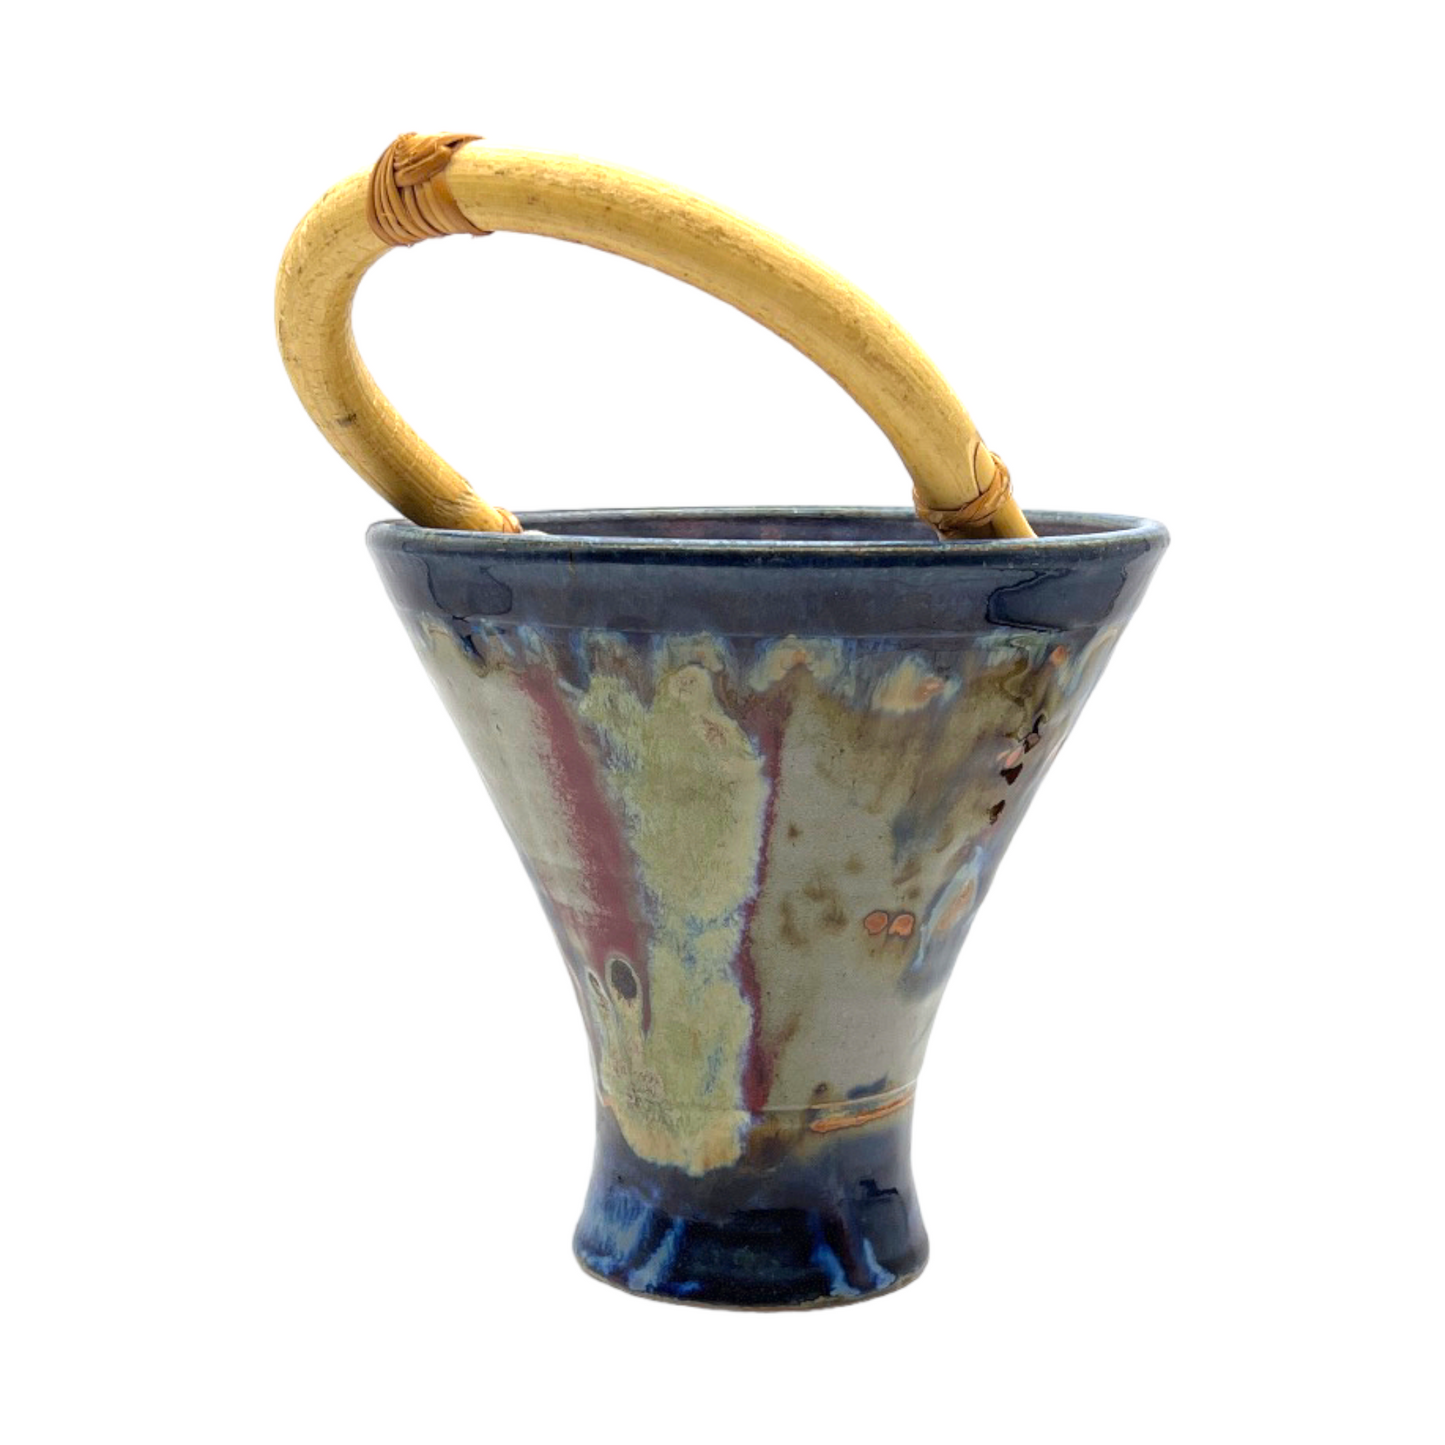 Jim Lauer Studio Pottery - Wooden Handled Bucket - 11"